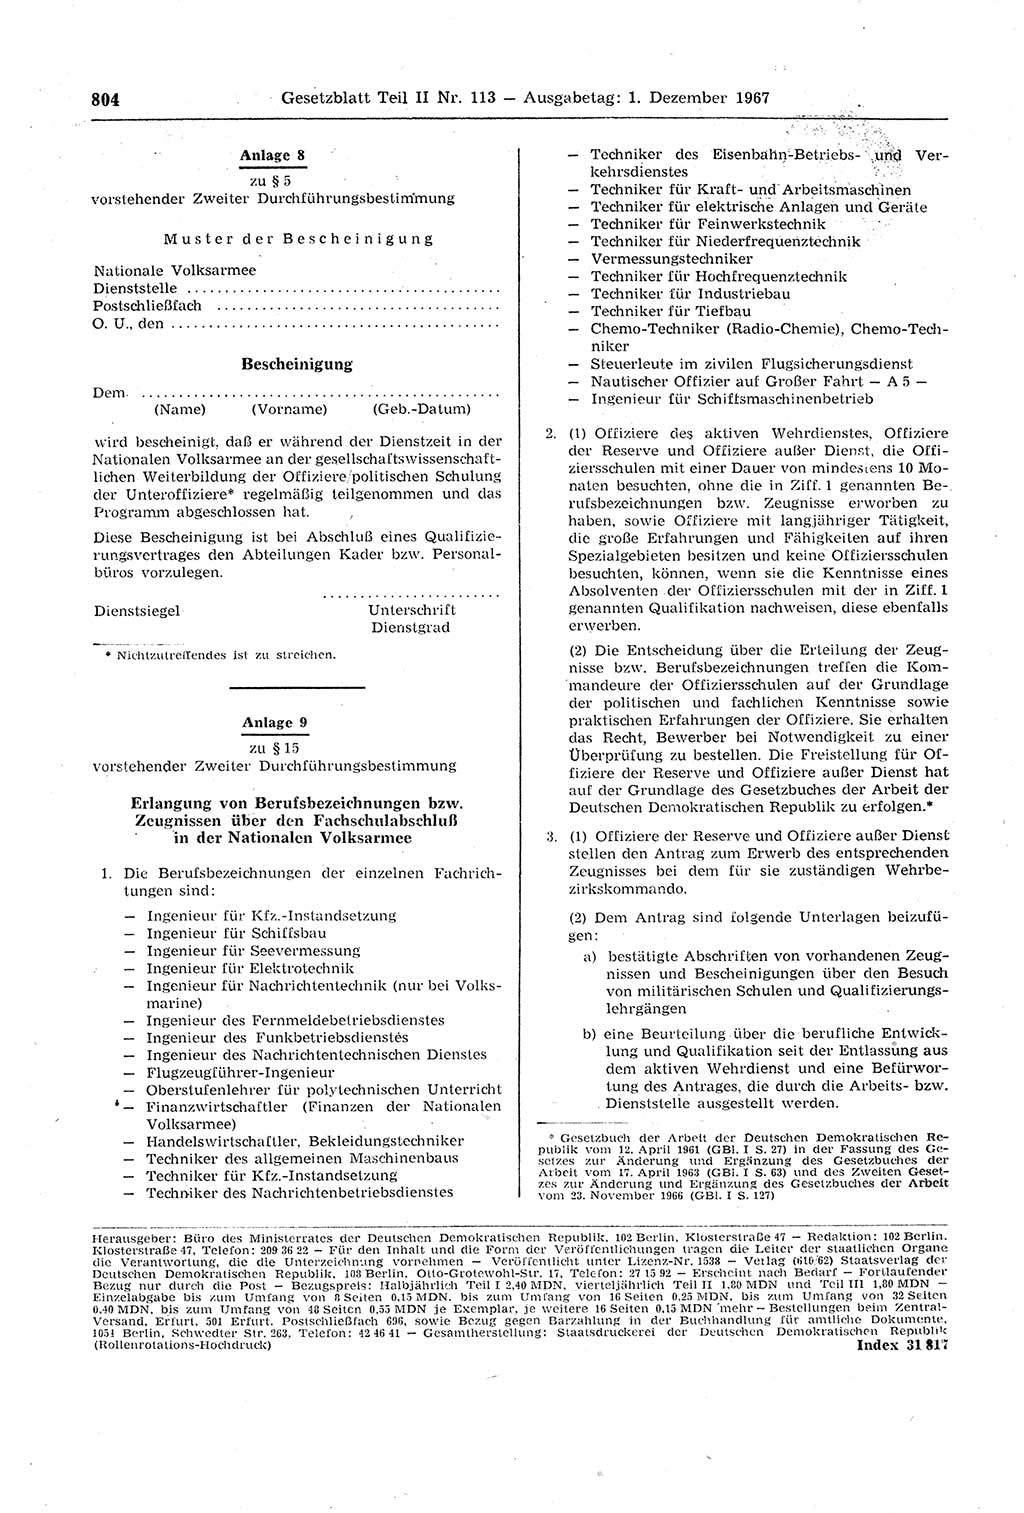 Gesetzblatt (GBl.) der Deutschen Demokratischen Republik (DDR) Teil ⅠⅠ 1967, Seite 804 (GBl. DDR ⅠⅠ 1967, S. 804)